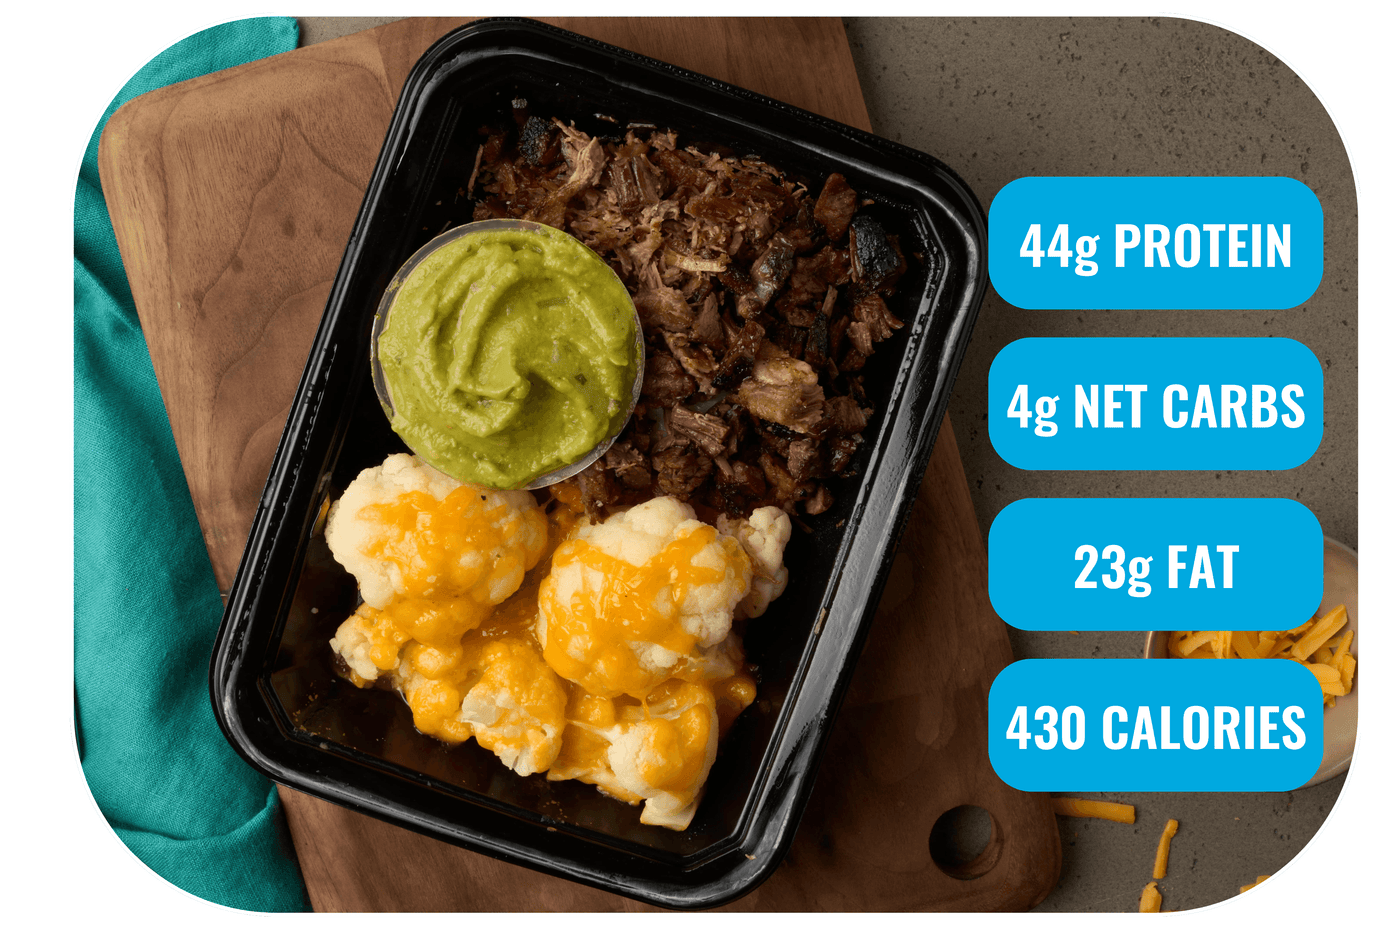 The Keto Meals (12 Meals Per Box)